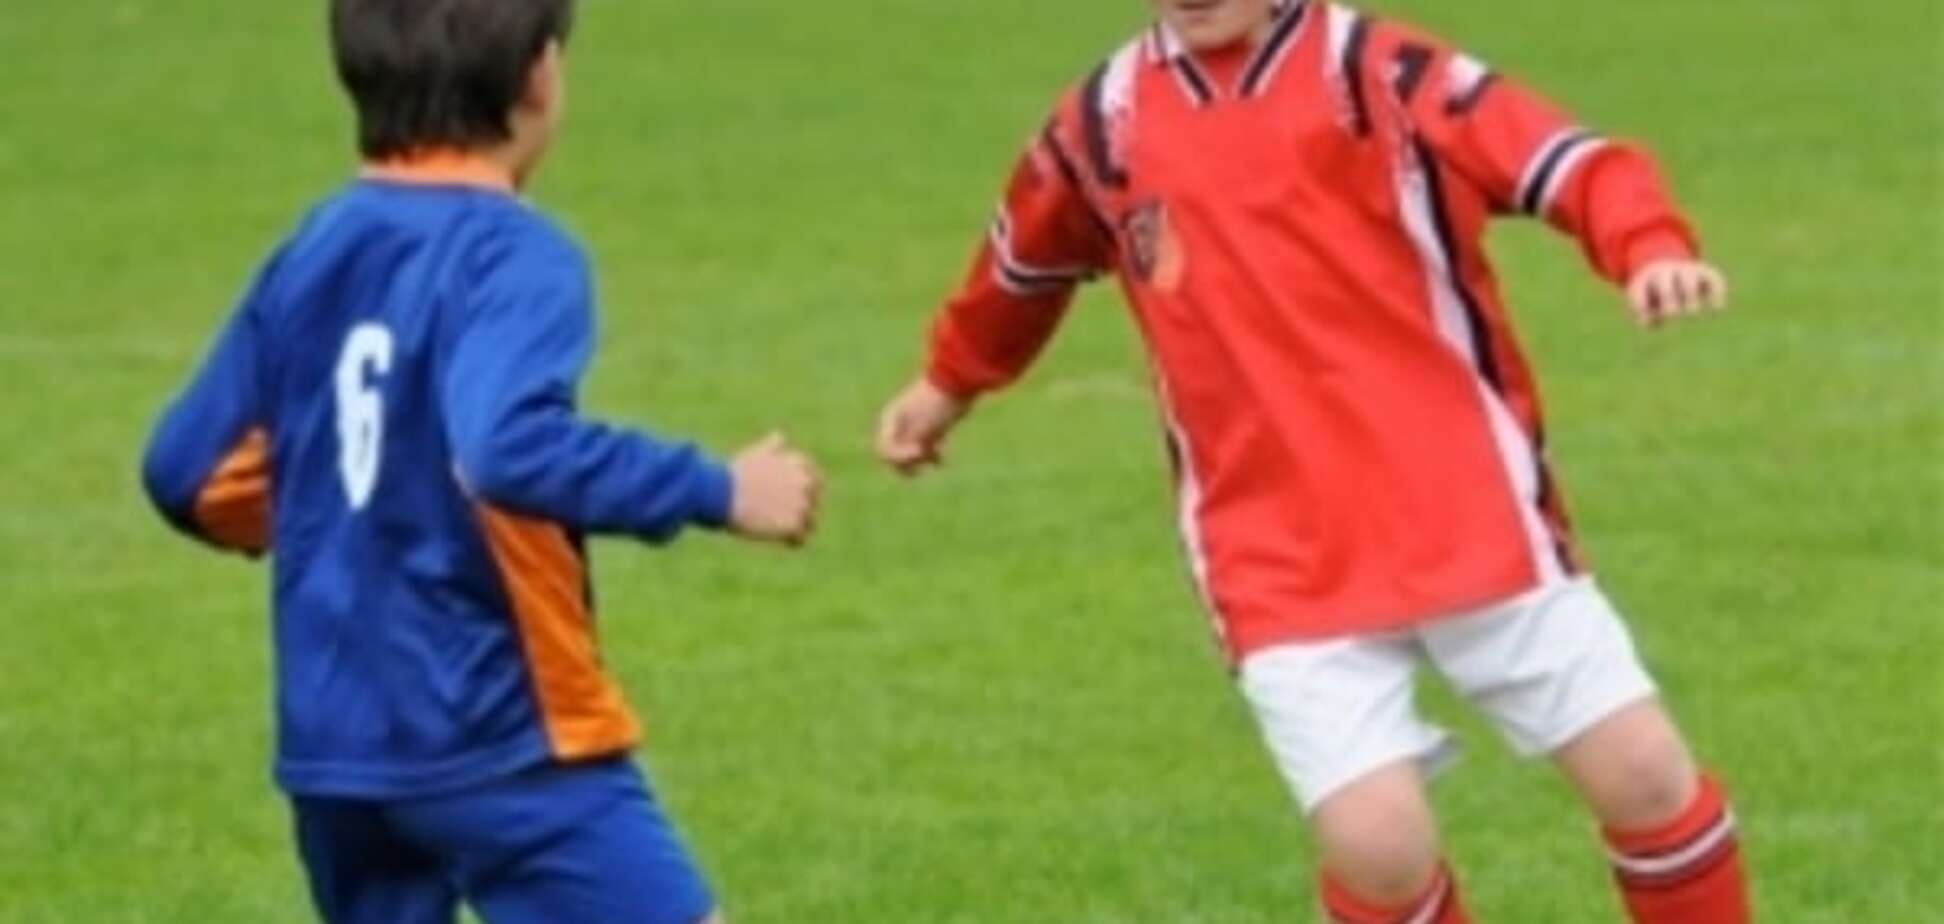 Футбольный тренер киевского клуба совратил 11-летнего мальчика